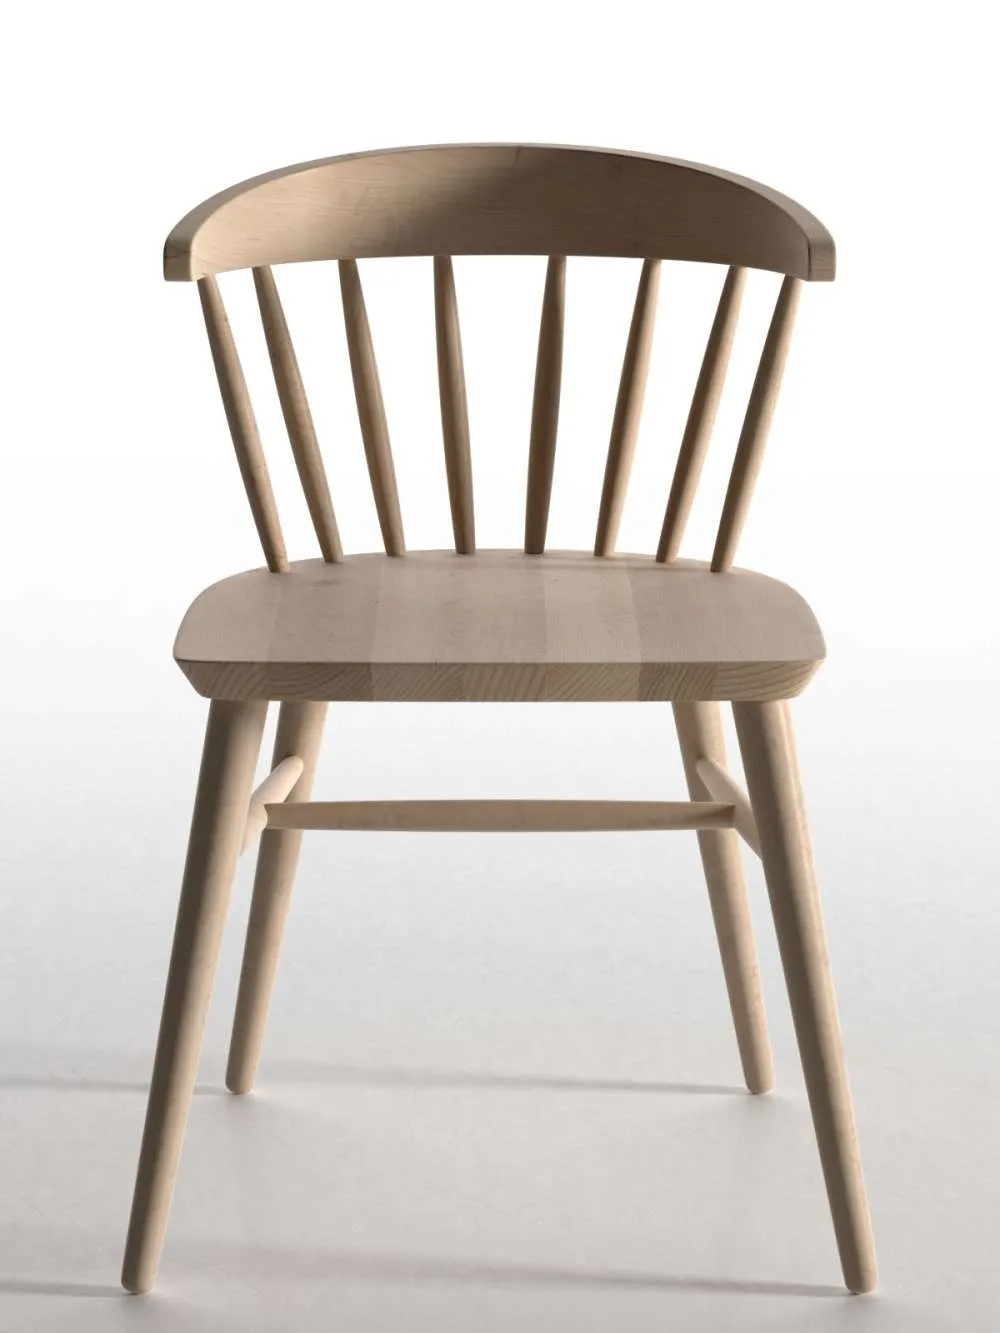 Chair and Armchair 3D Models – Chair 2 (max; obj; fbx; c4d)